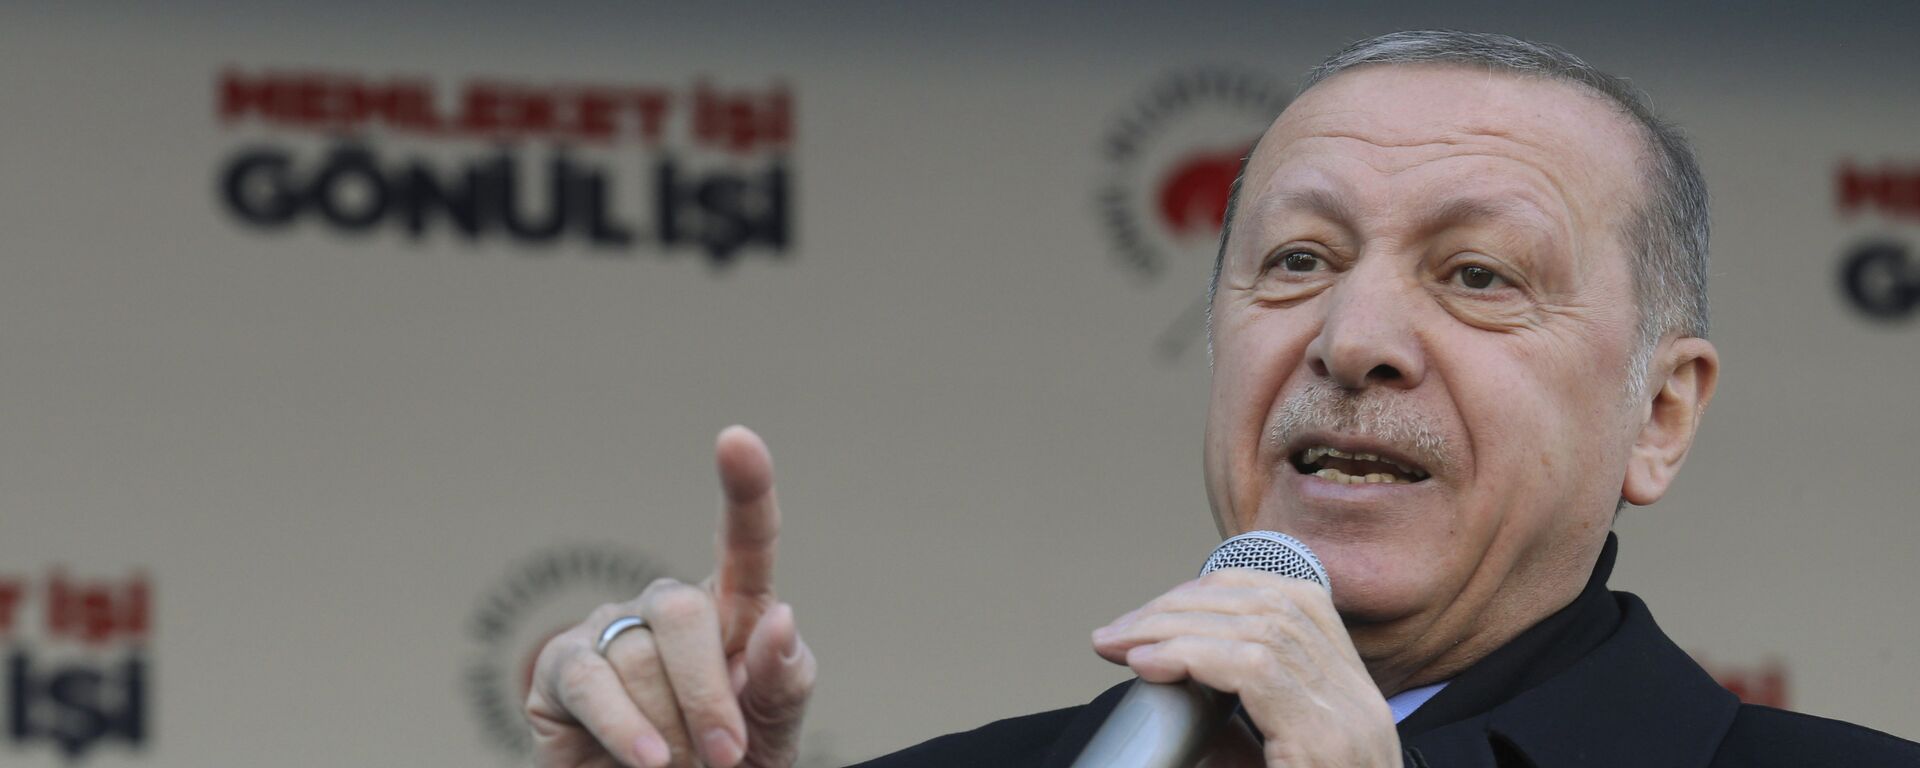 Recep Tayyip Erdogan, presidente de Turquía - Sputnik Mundo, 1920, 12.01.2021